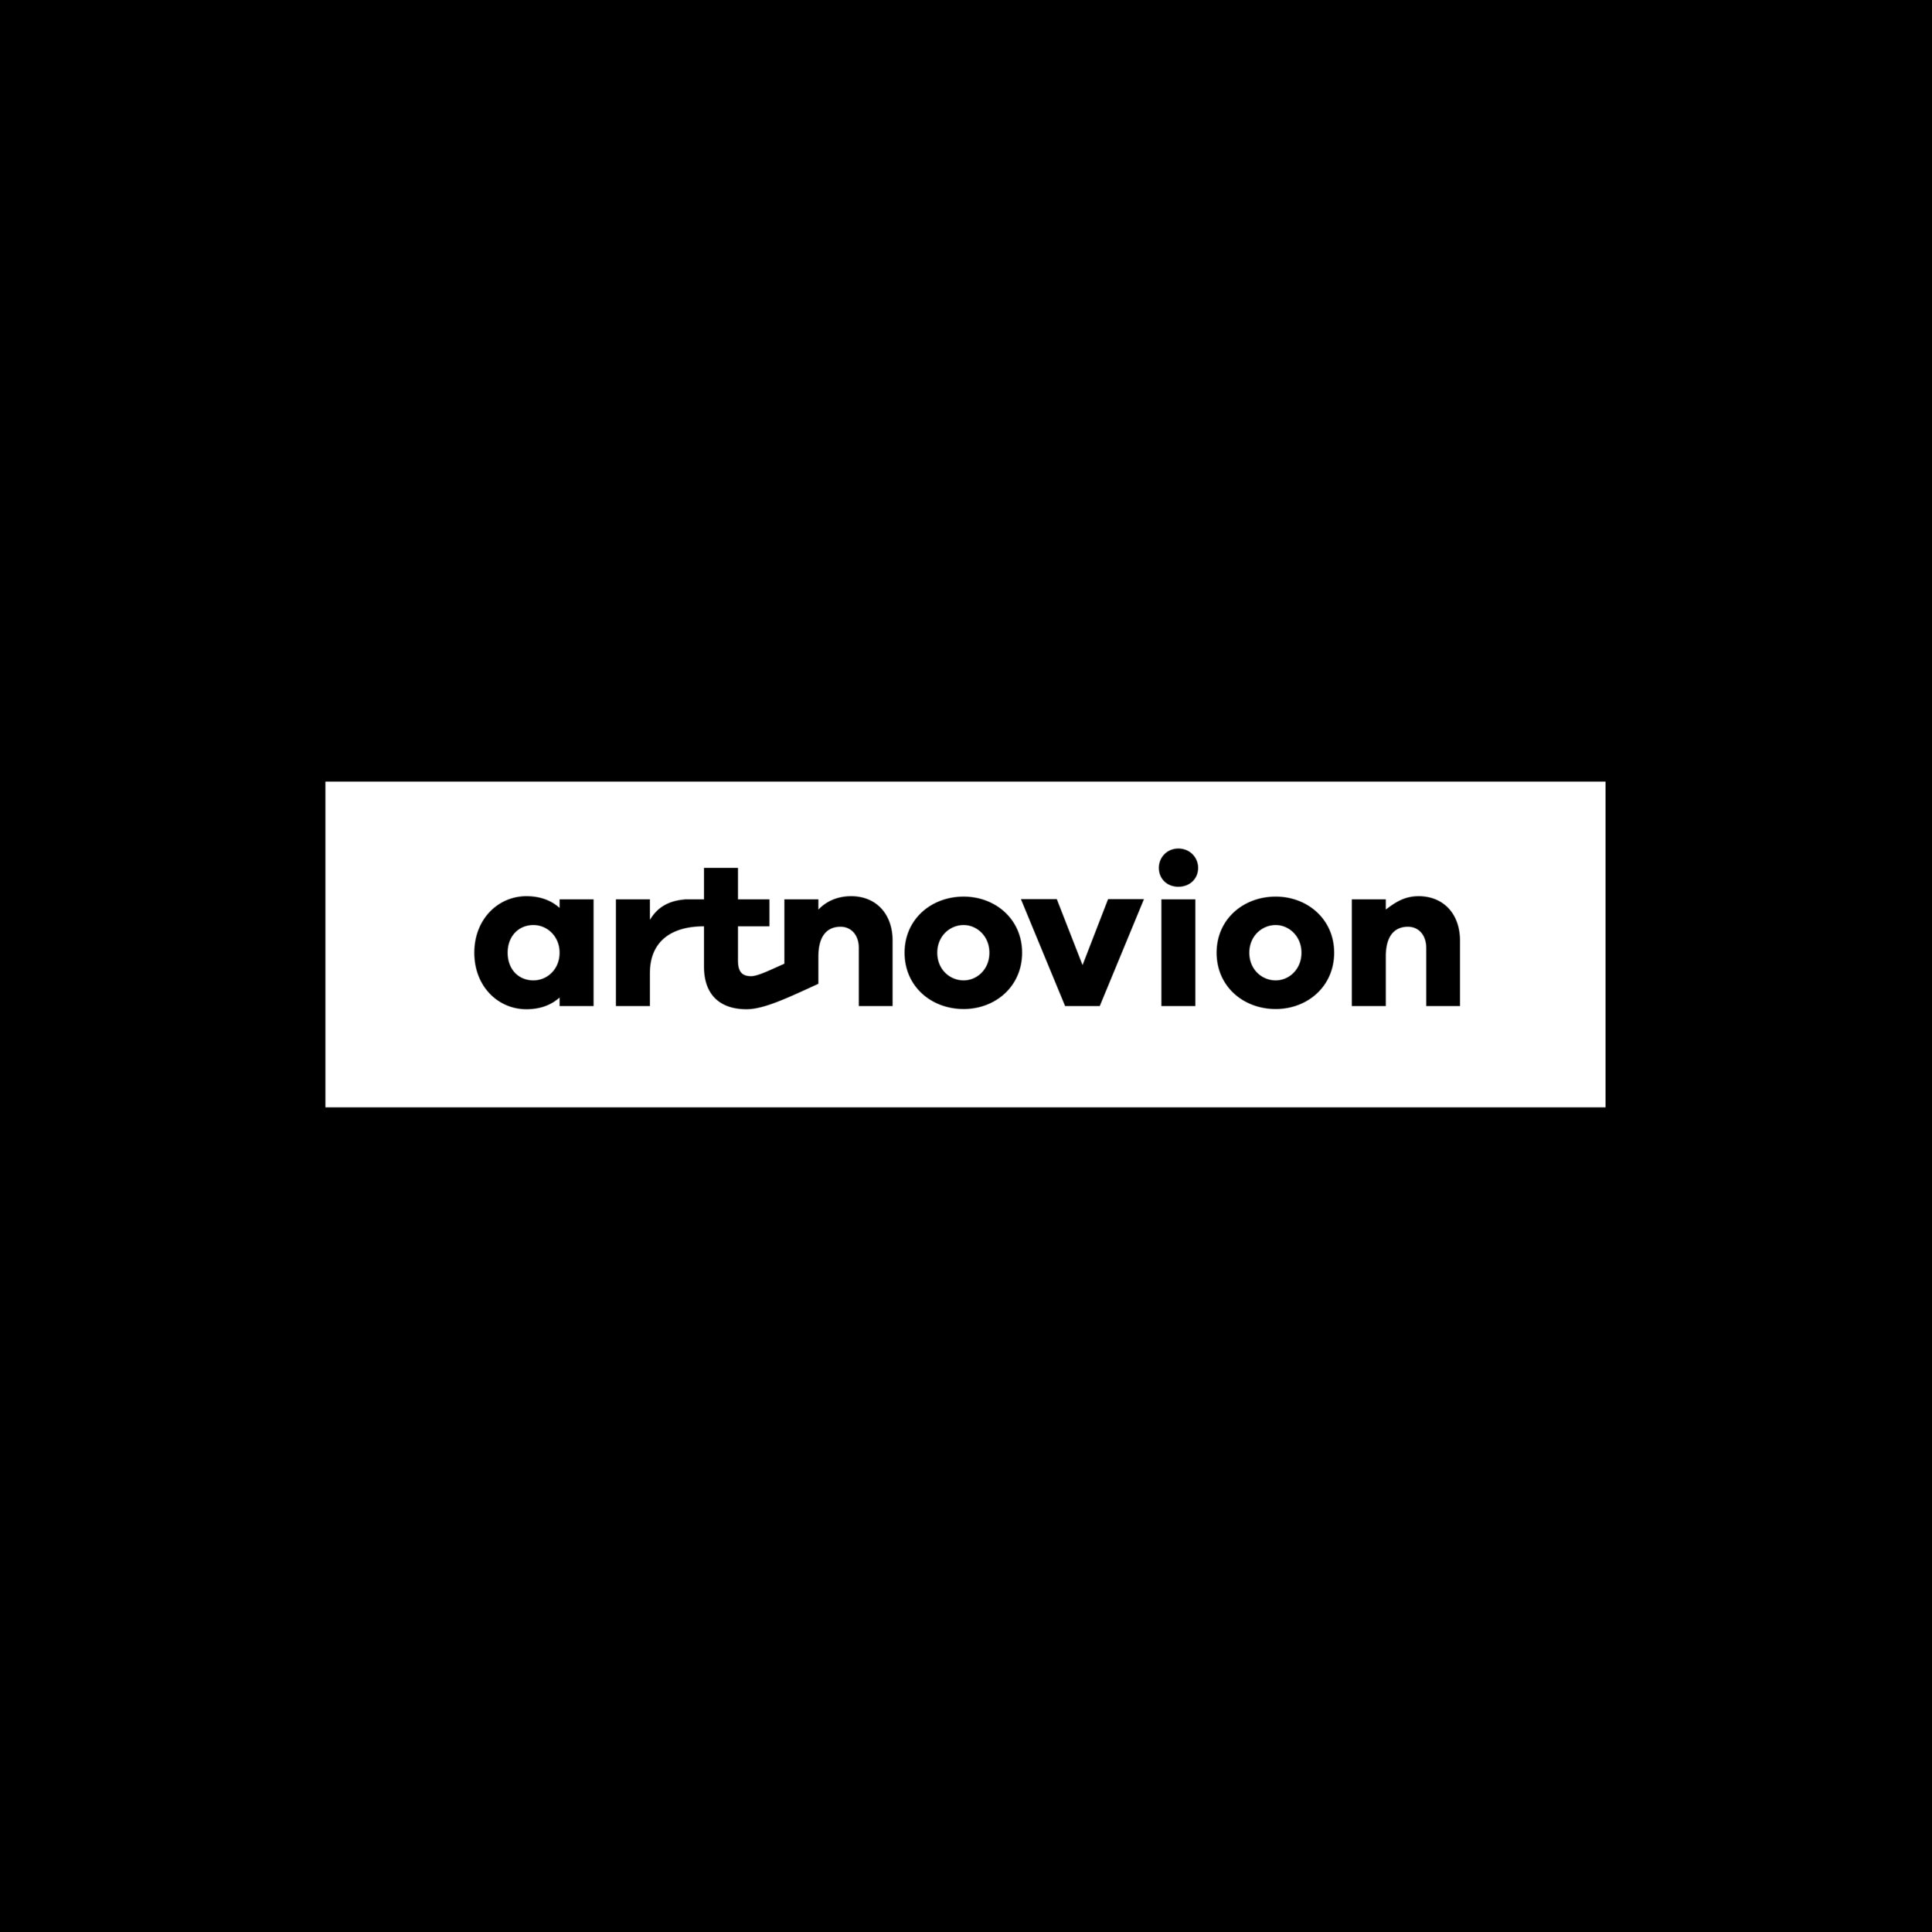 Artnovion Logo.jpg